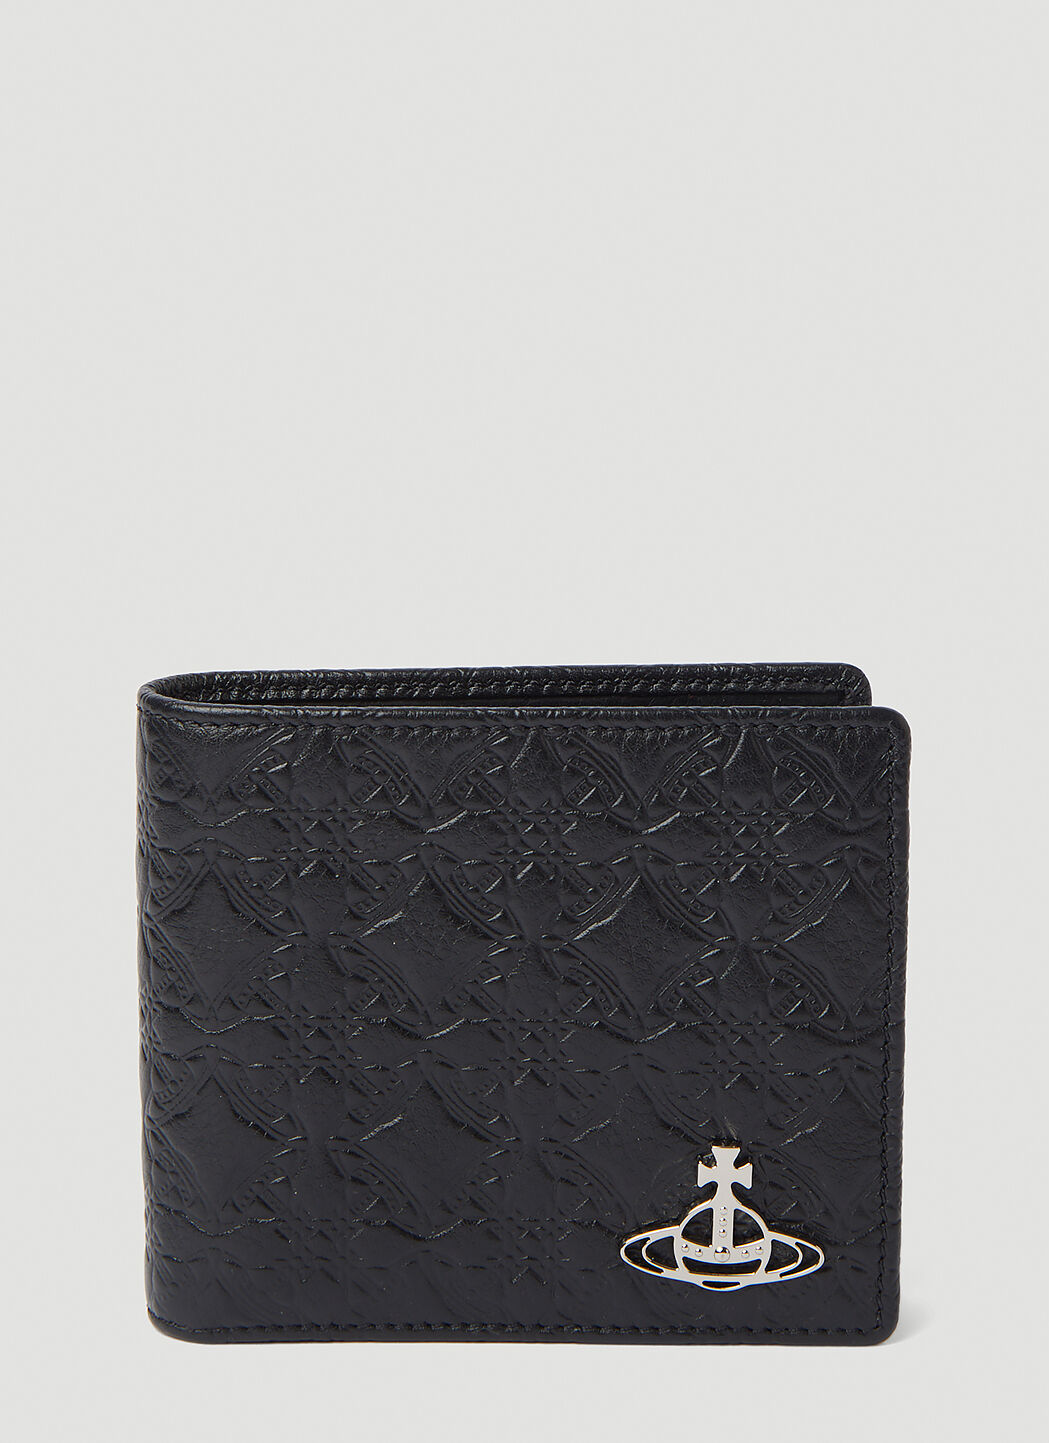 Vivienne Westwood Embossed Bi-Fold Wallet in Black | LN-CC®